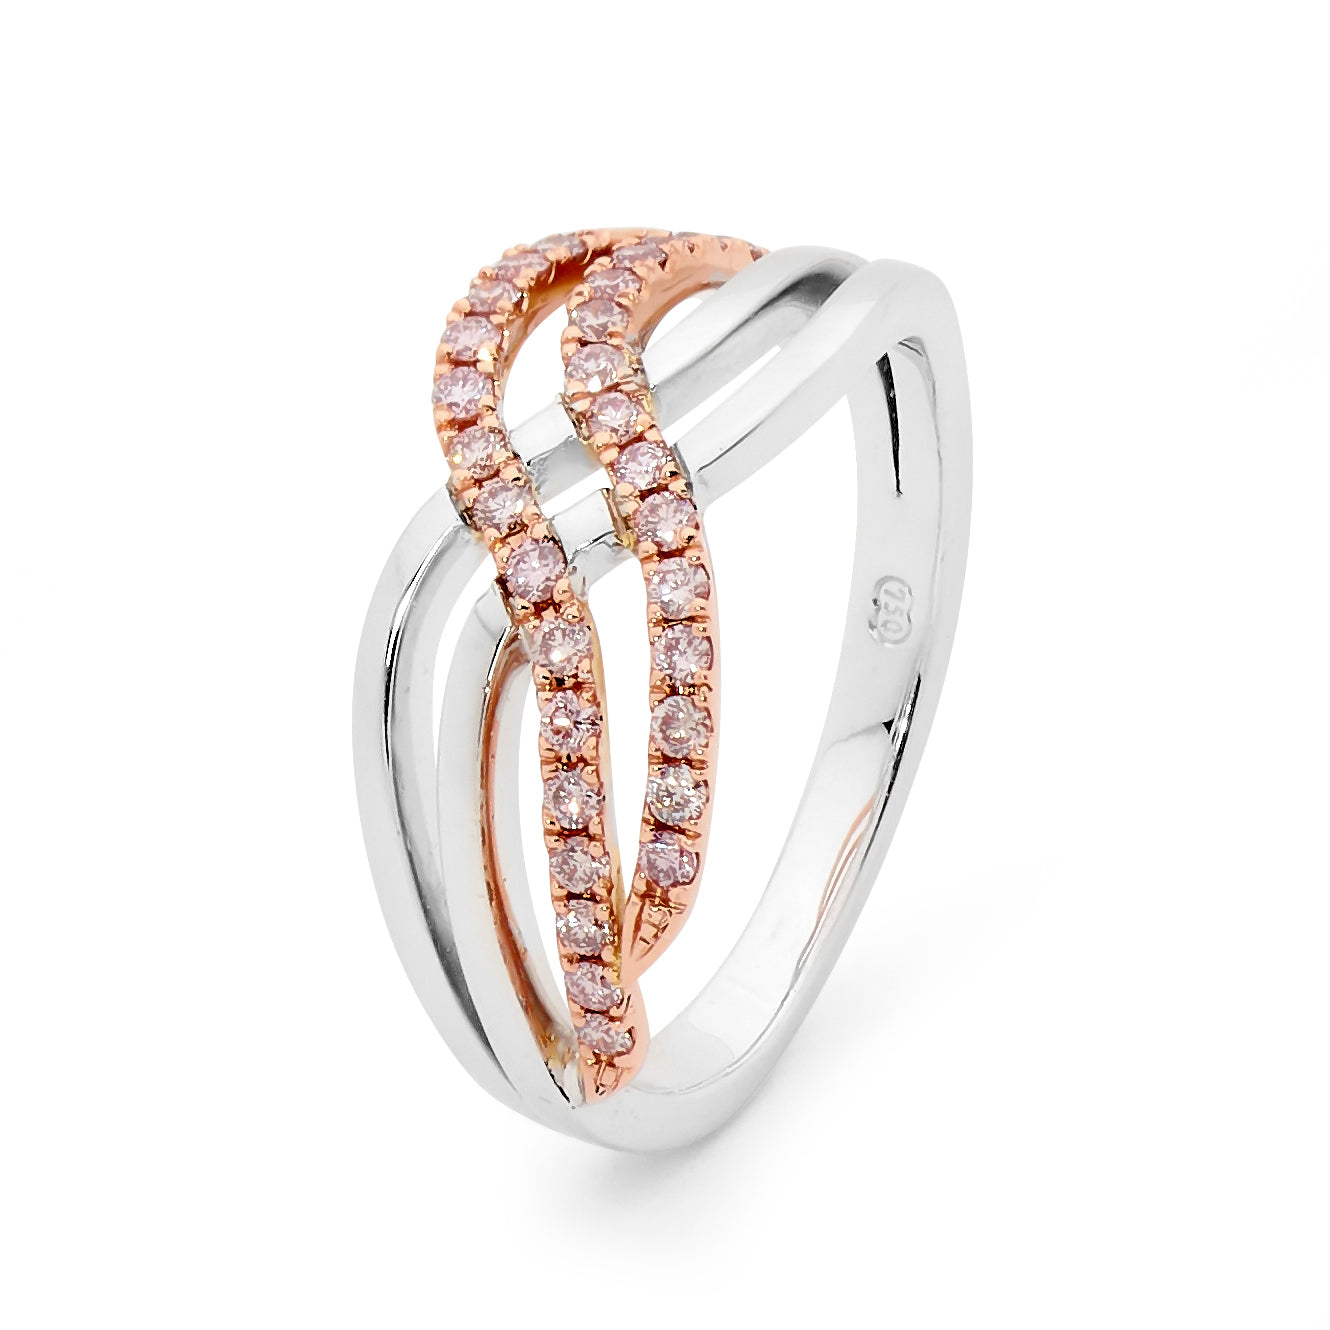 18ct White & Rose Gold Argyle Pink Diamond Ring